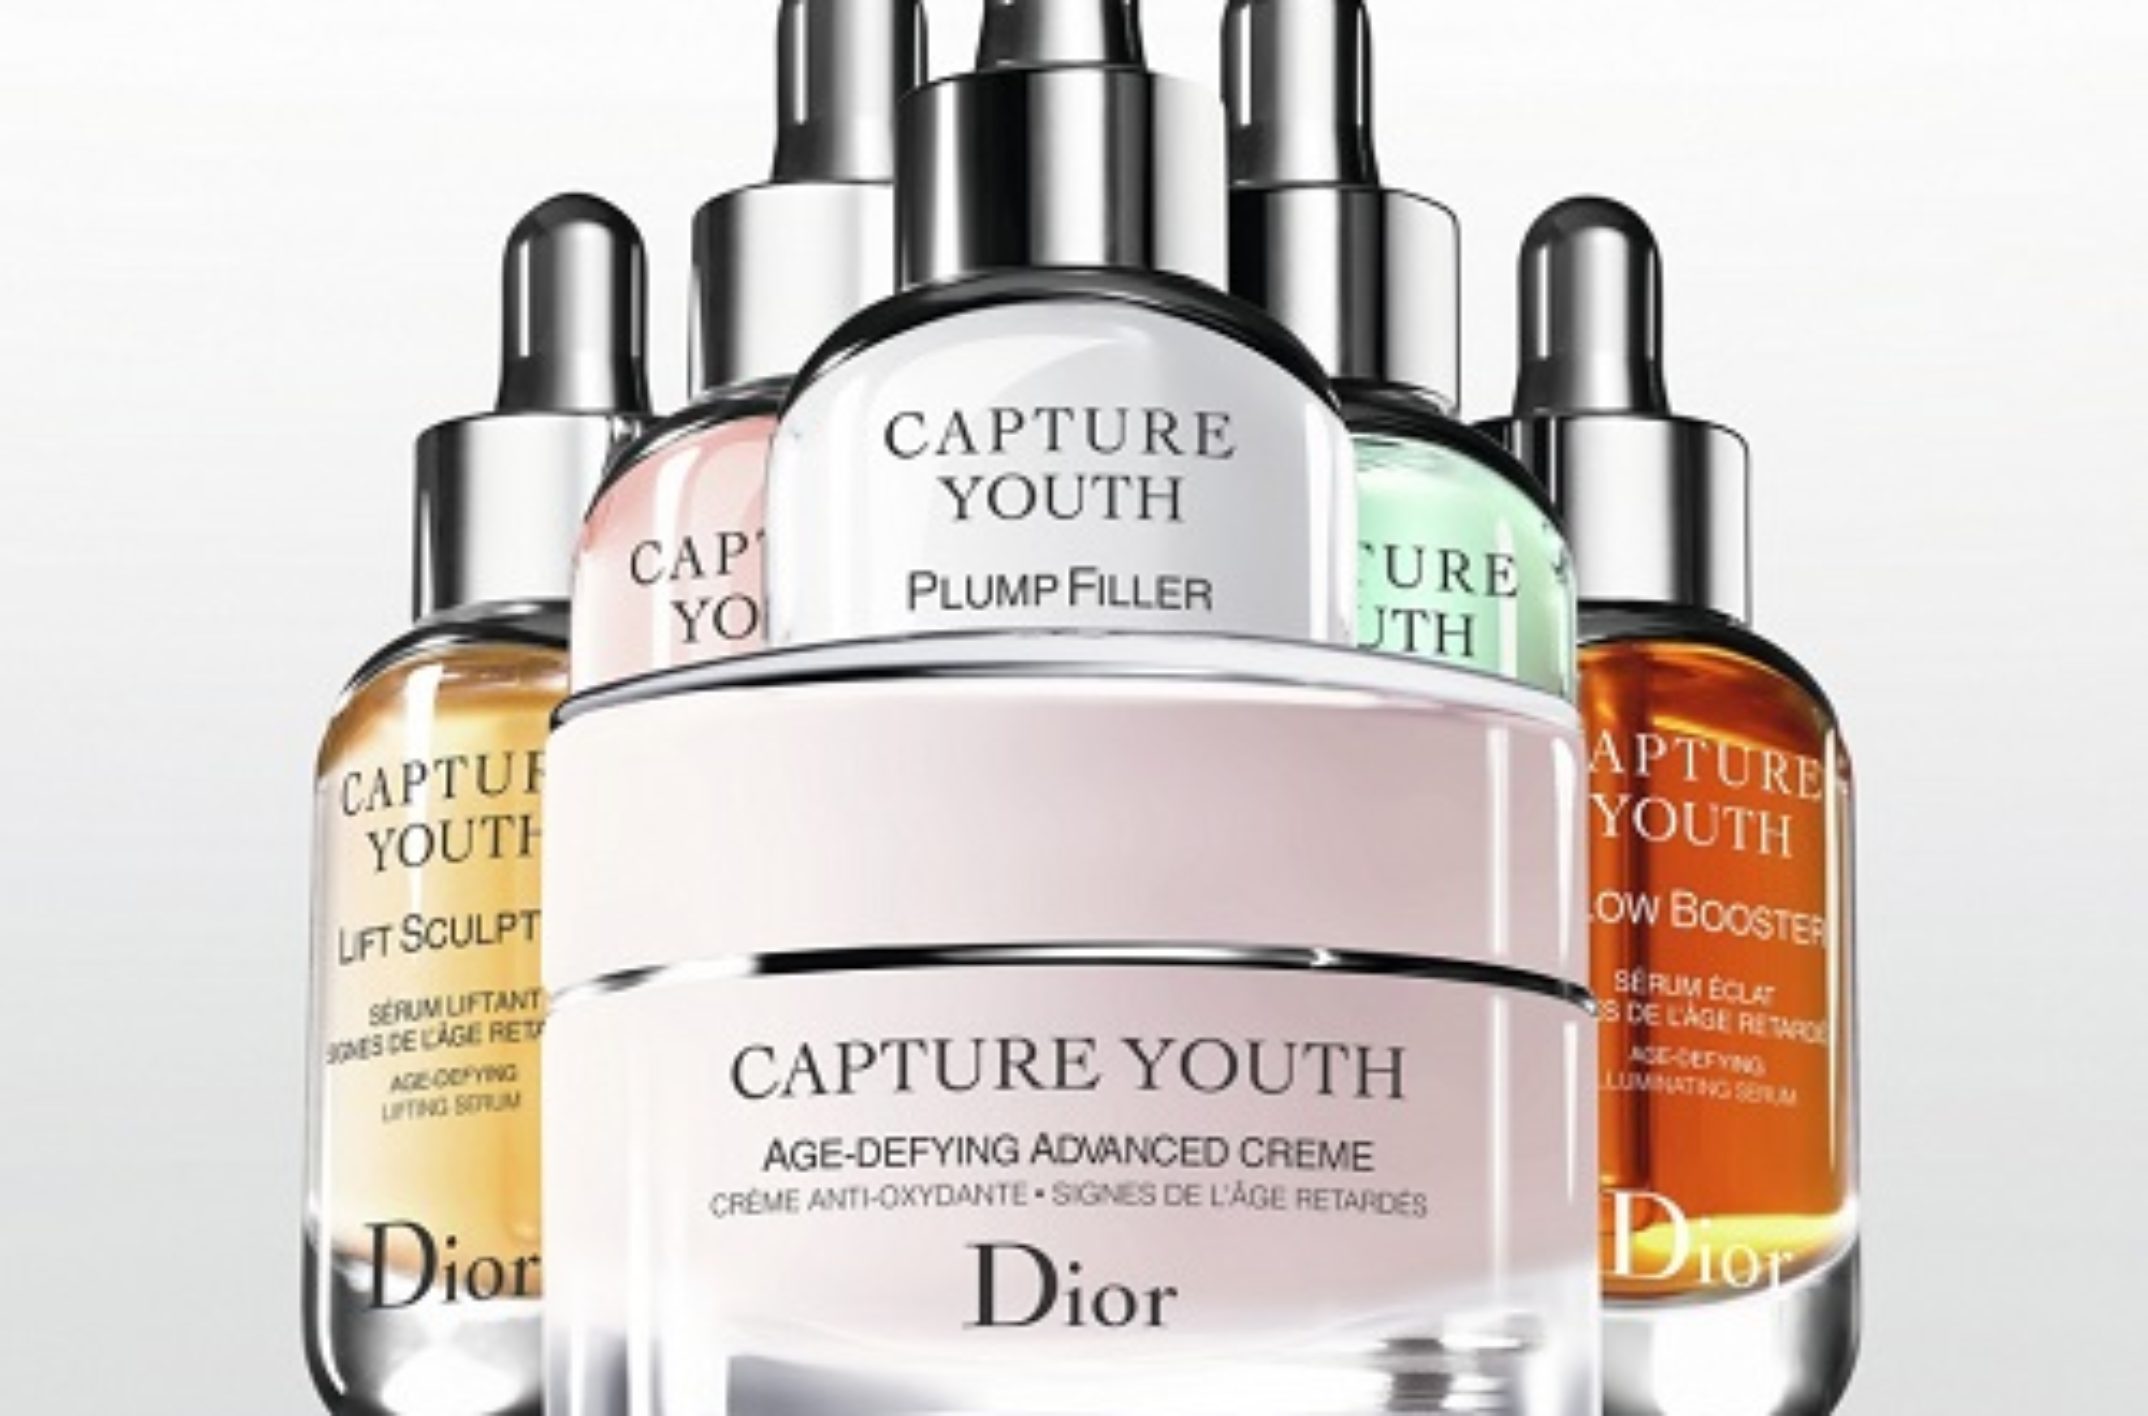 Des échantillons gratuits du protocole jeunesse “Capture Youth” offerts par Dior & Sephora